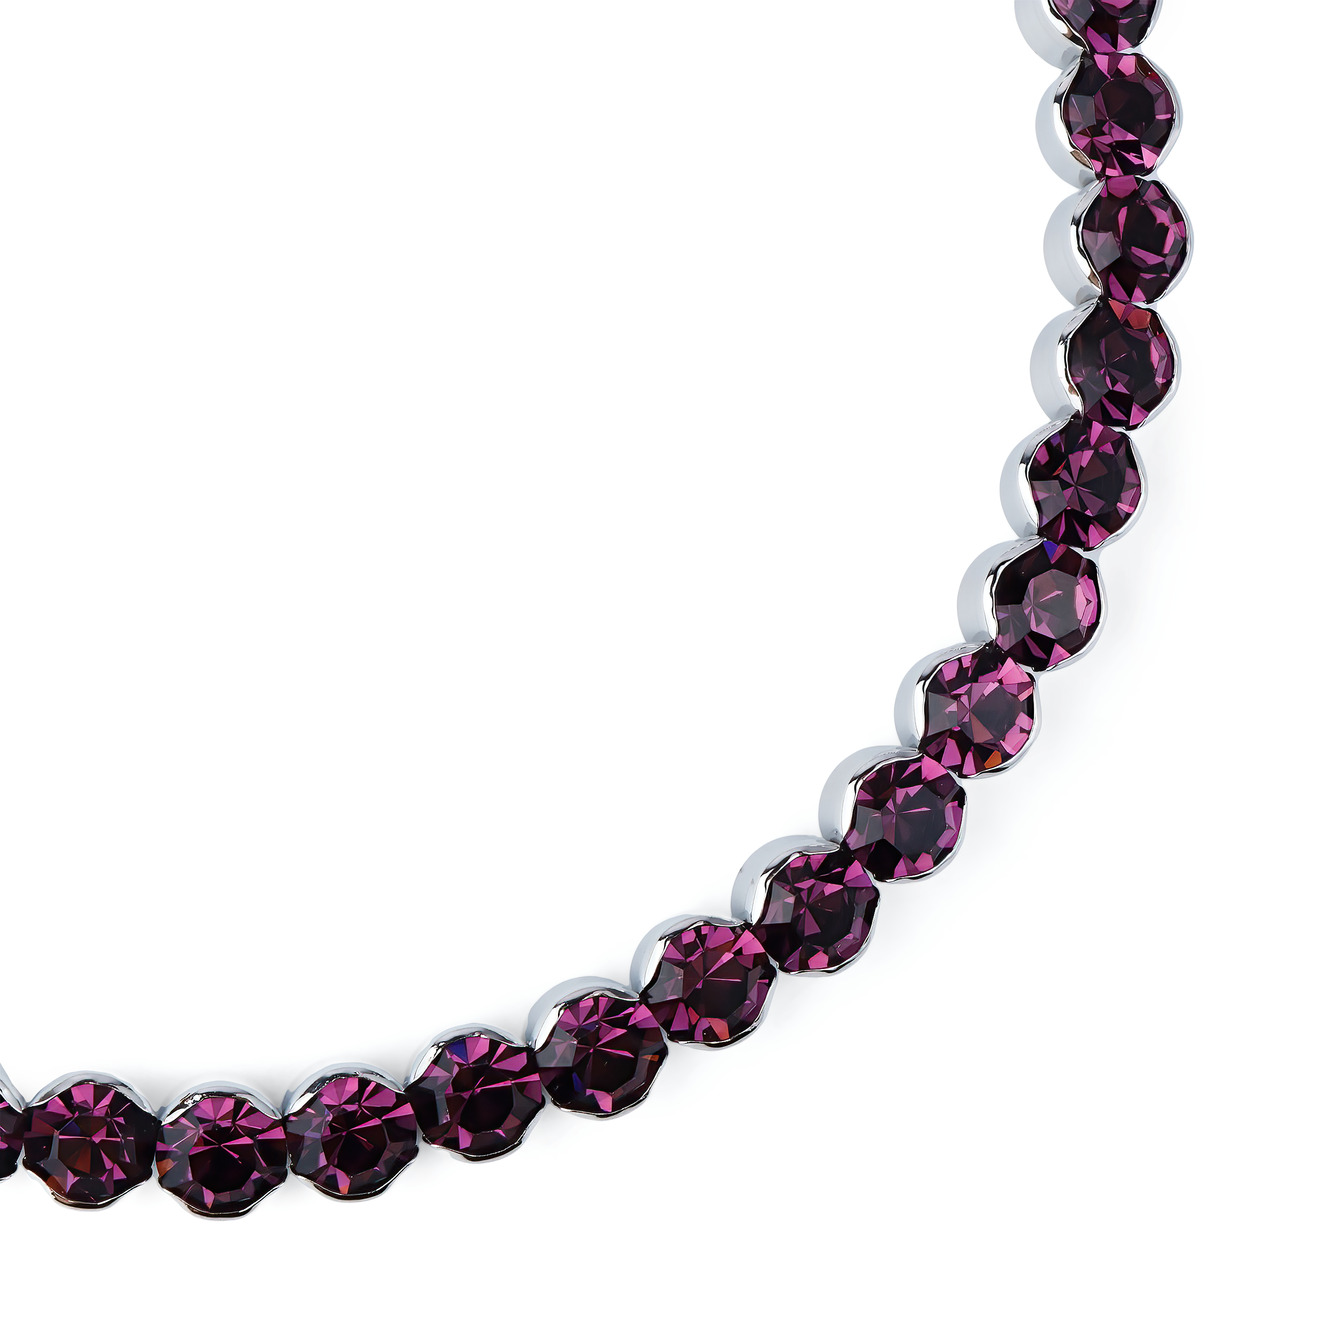 Herald Percy Фиолетовый чокер с круглыми кристаллами herald percy черный чокер с кристаллами